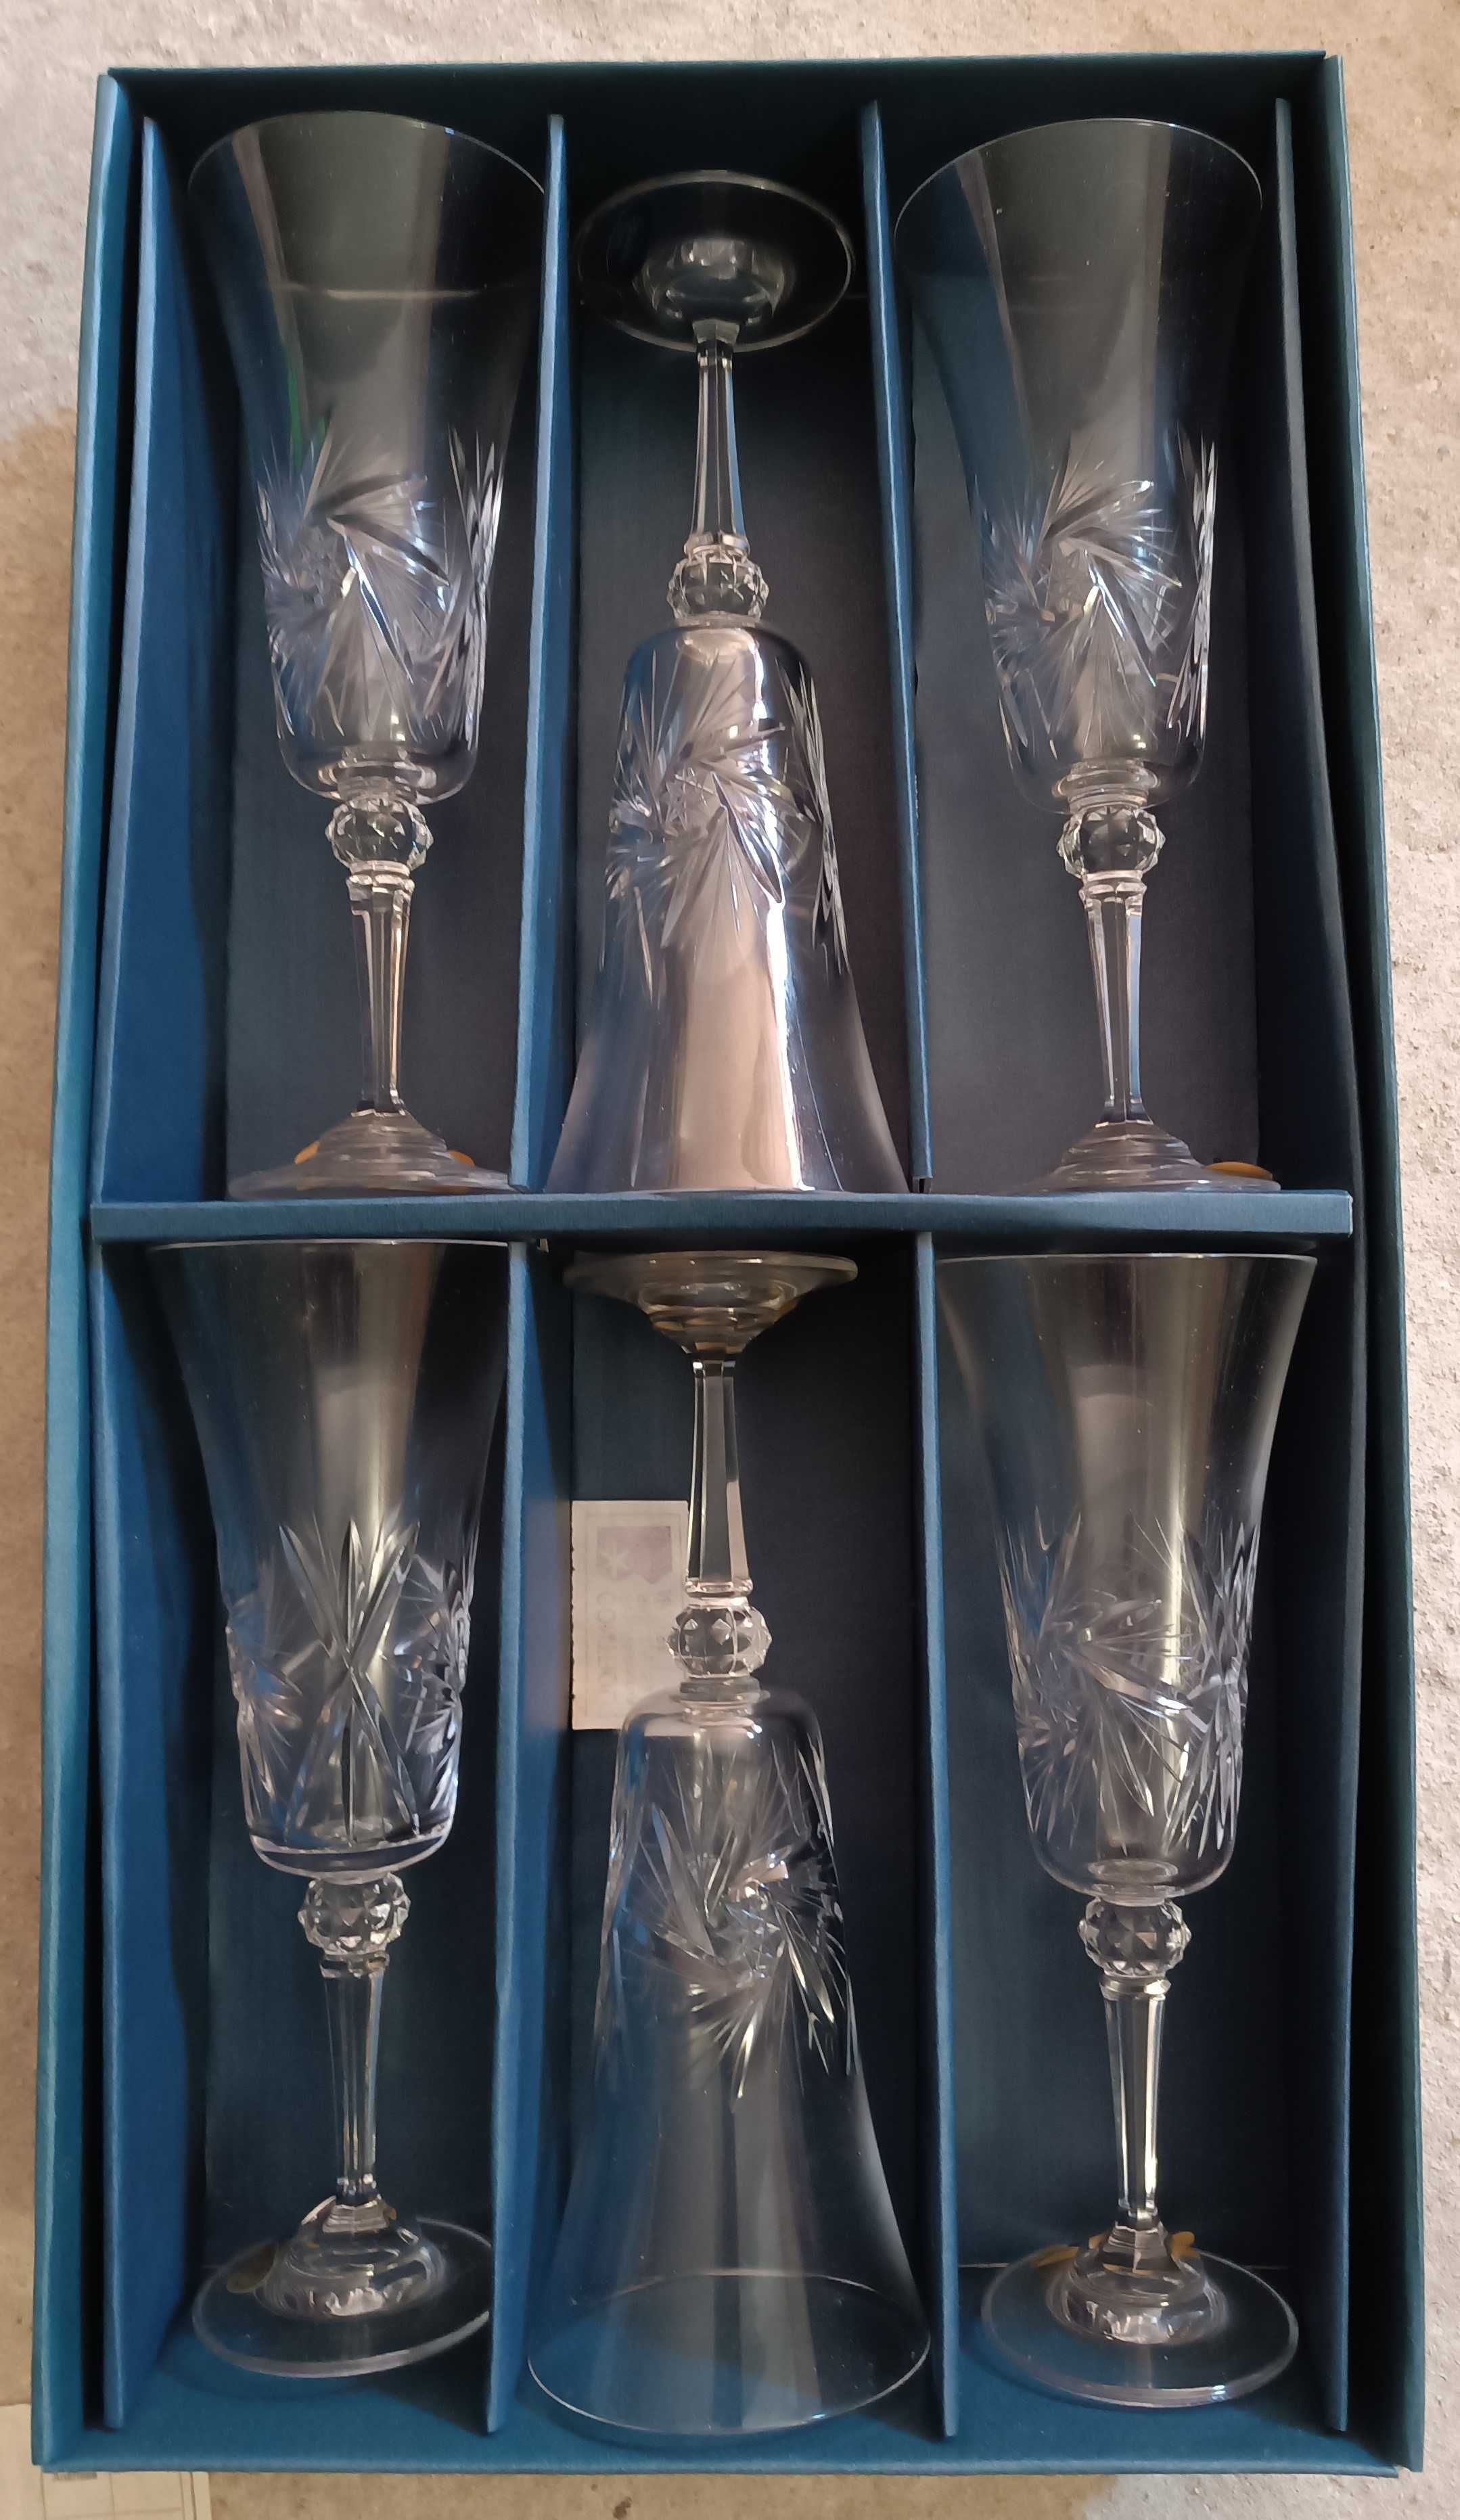 Conjunto de 6 copos de - Bohemia cristal - antigos